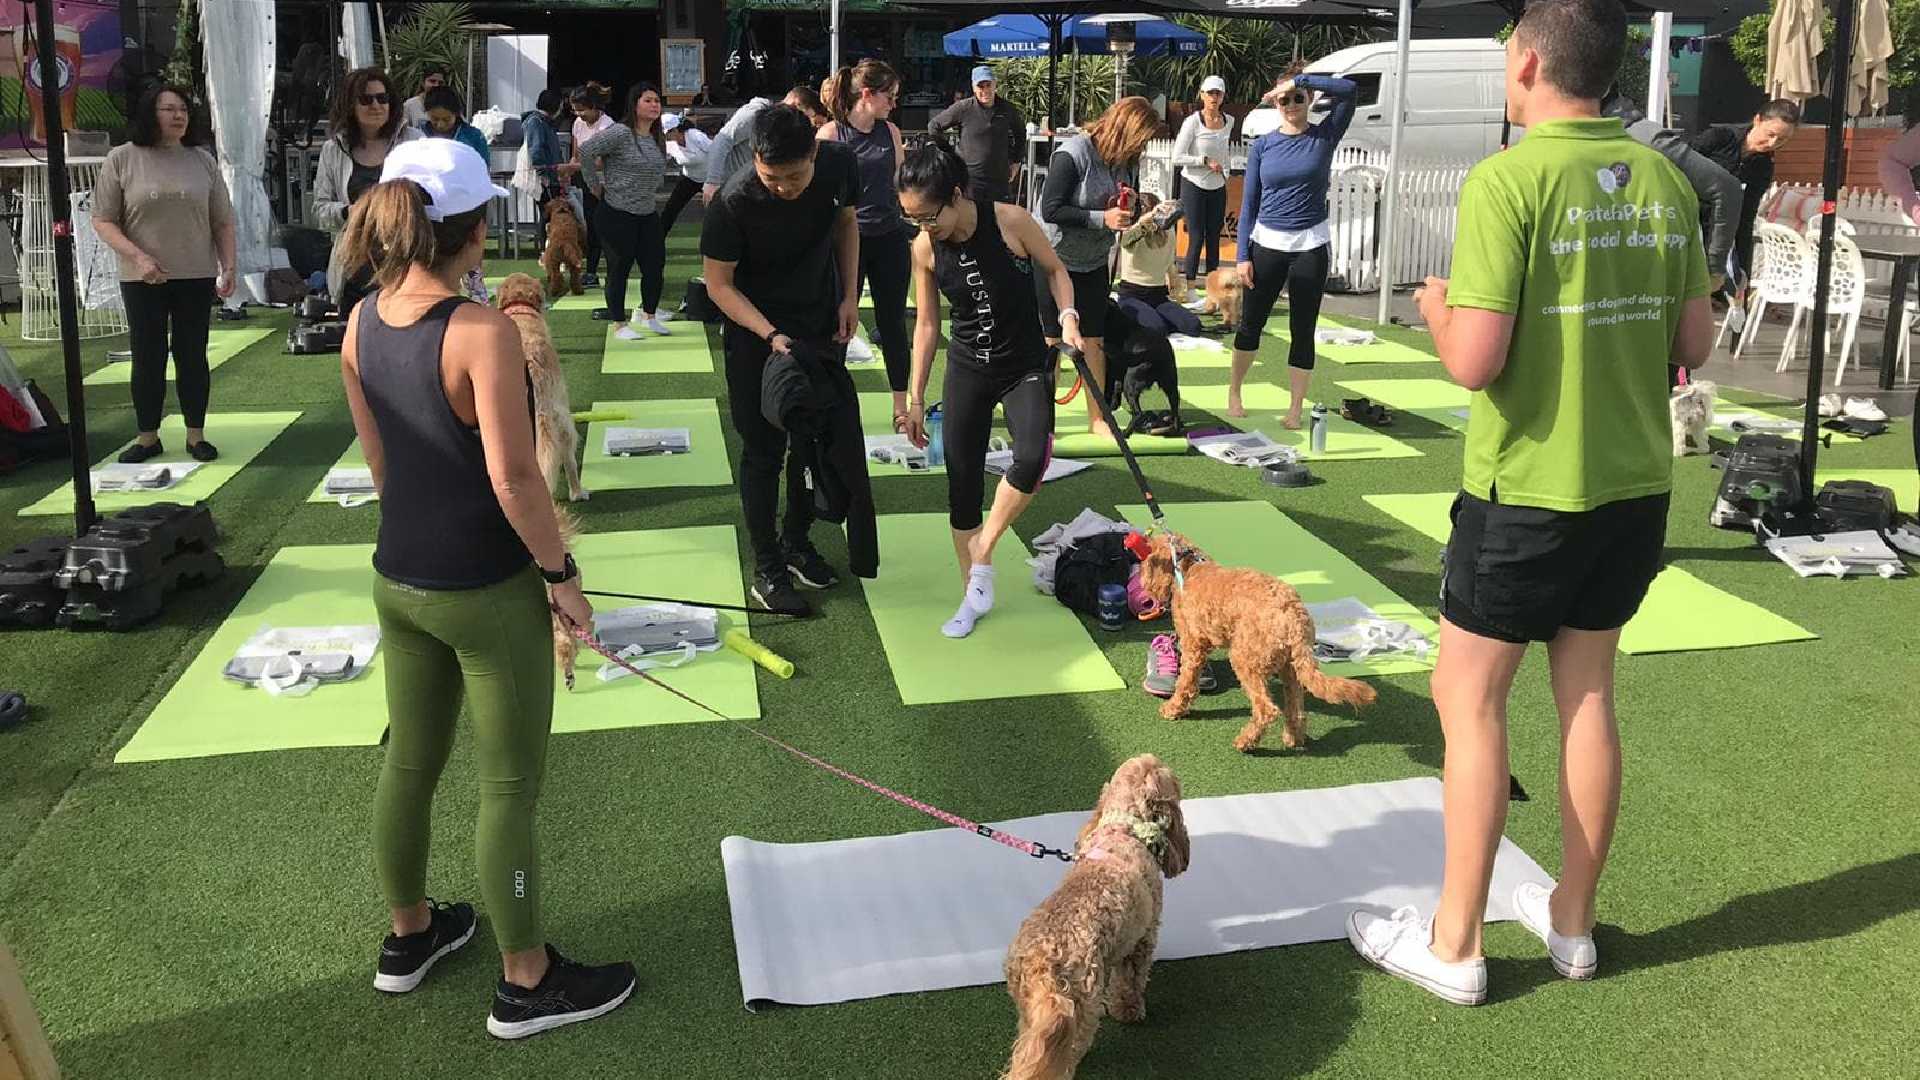 Pups & Pilates